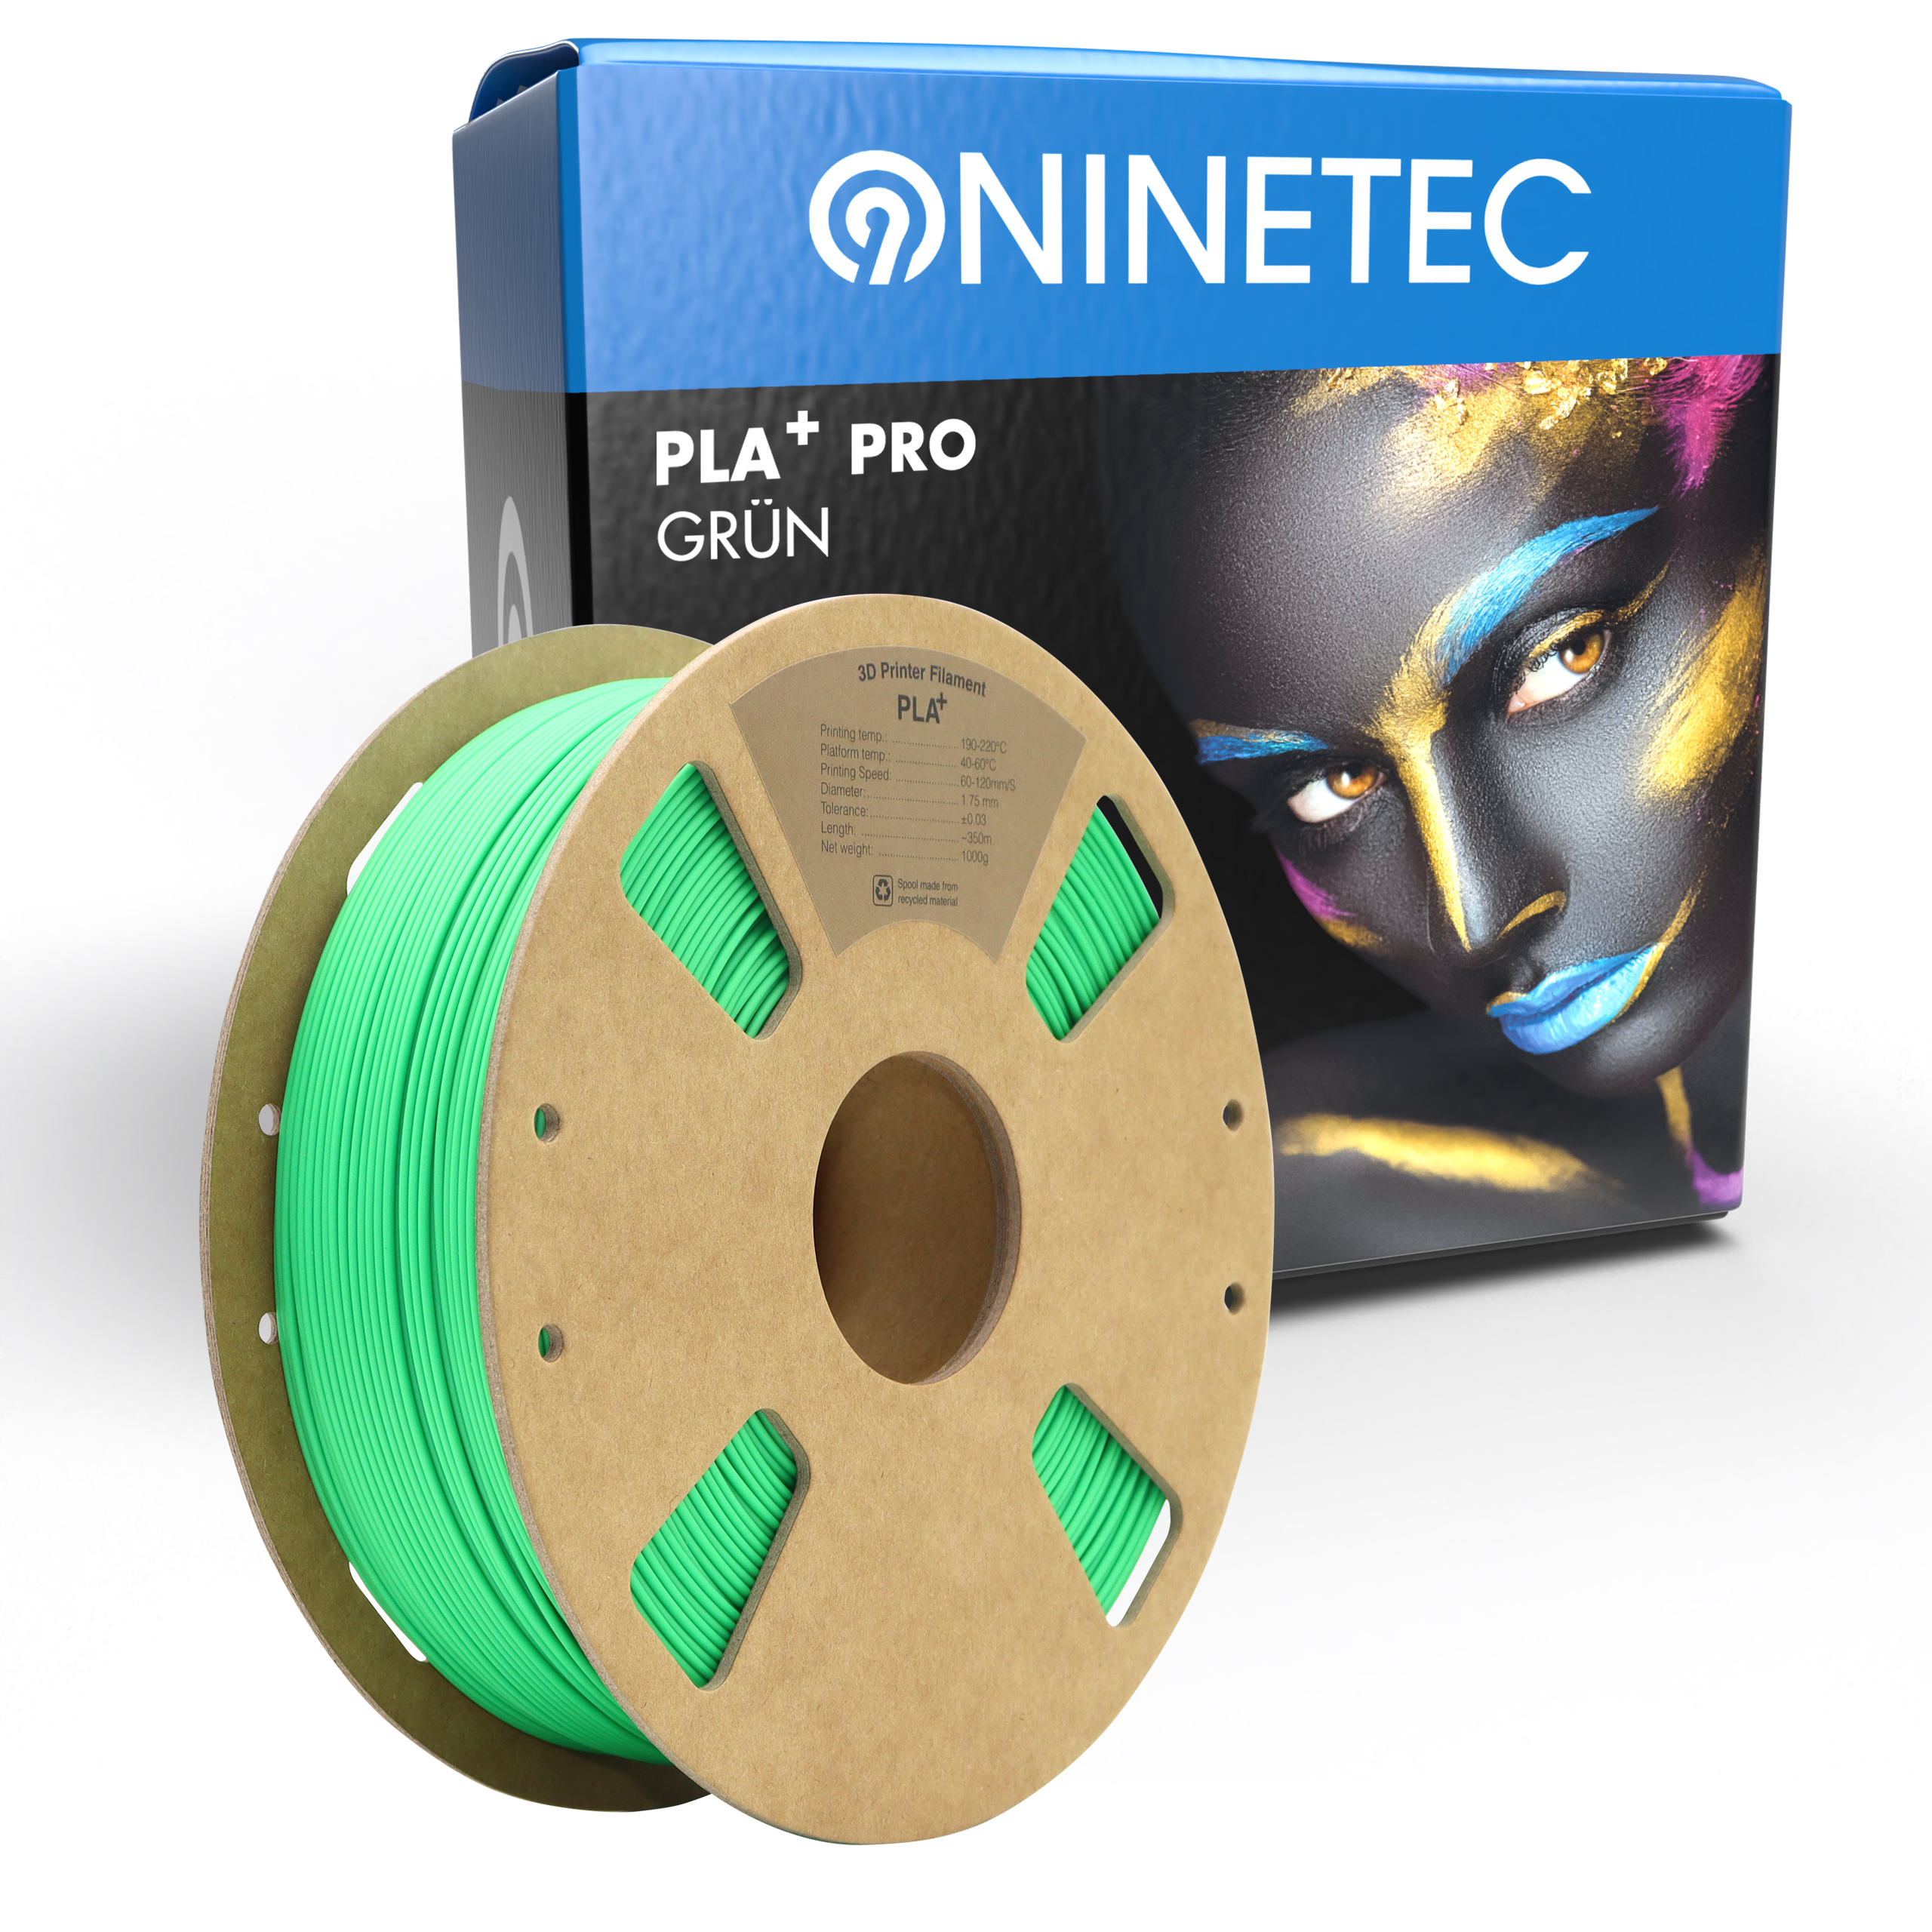 NINETEC PLA+ PRO Grün Filament